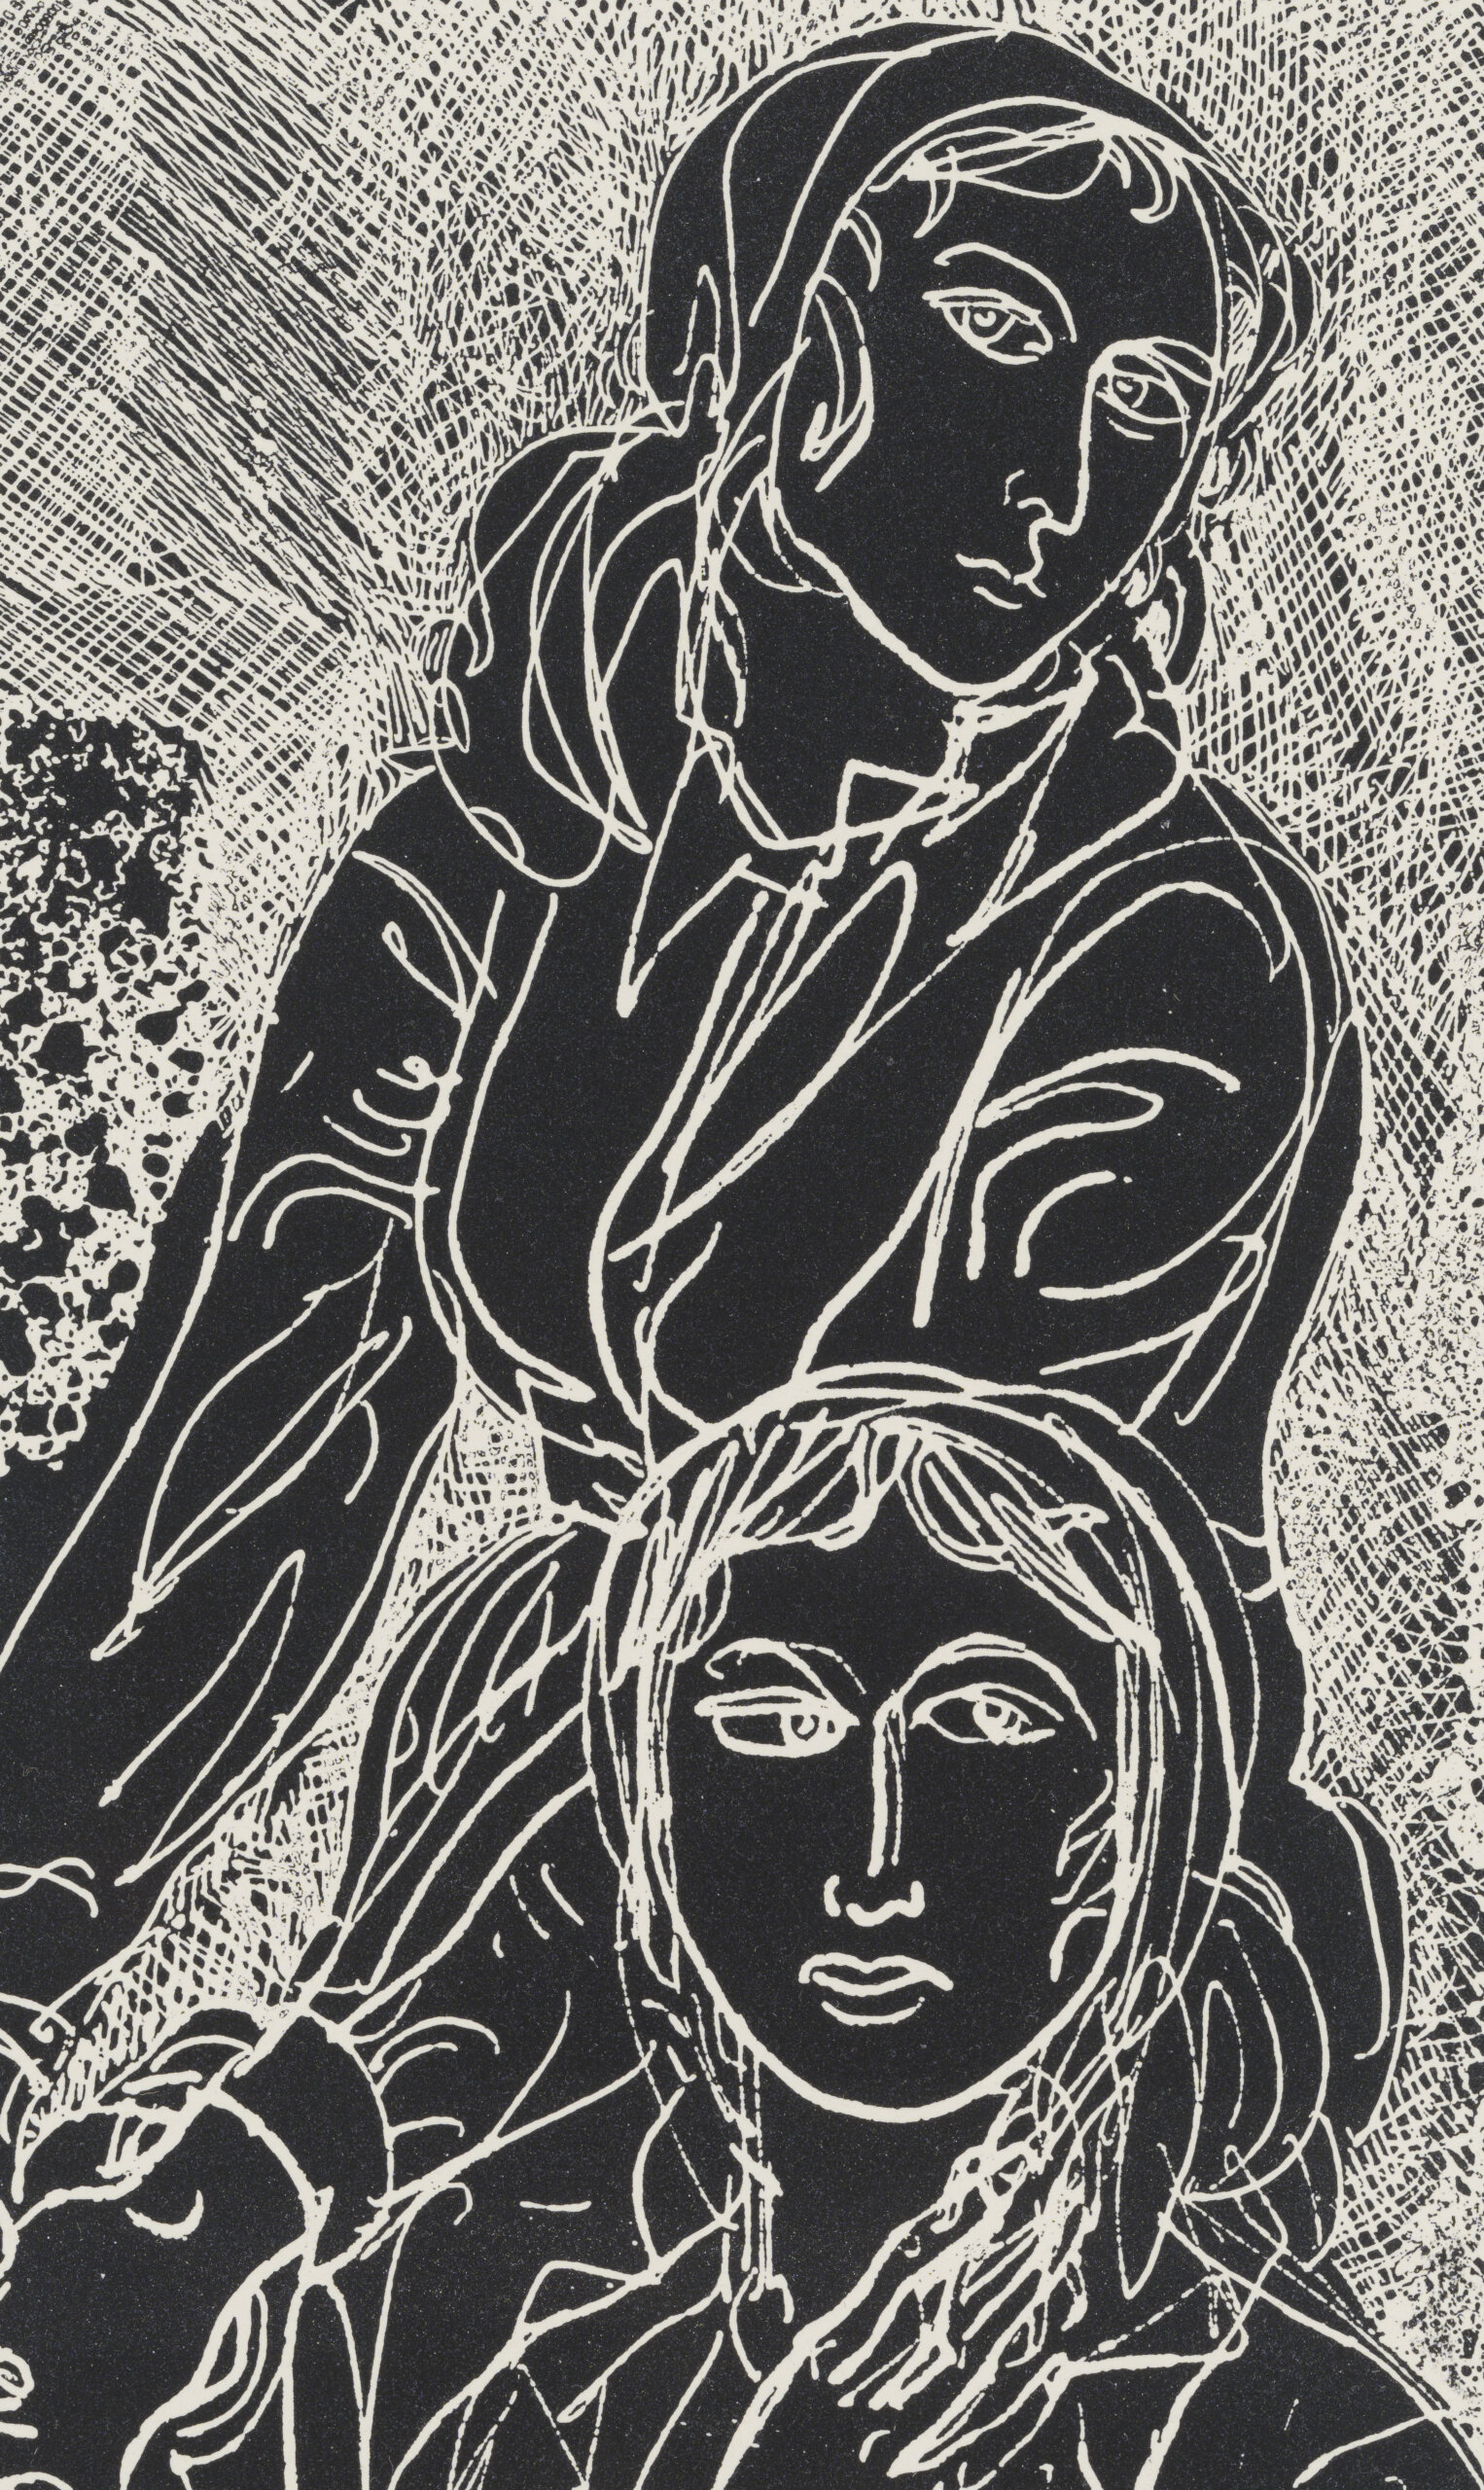 Evald Okas “Kaluri tütred” 1971. Plm 29,5 x 18,8 cm.